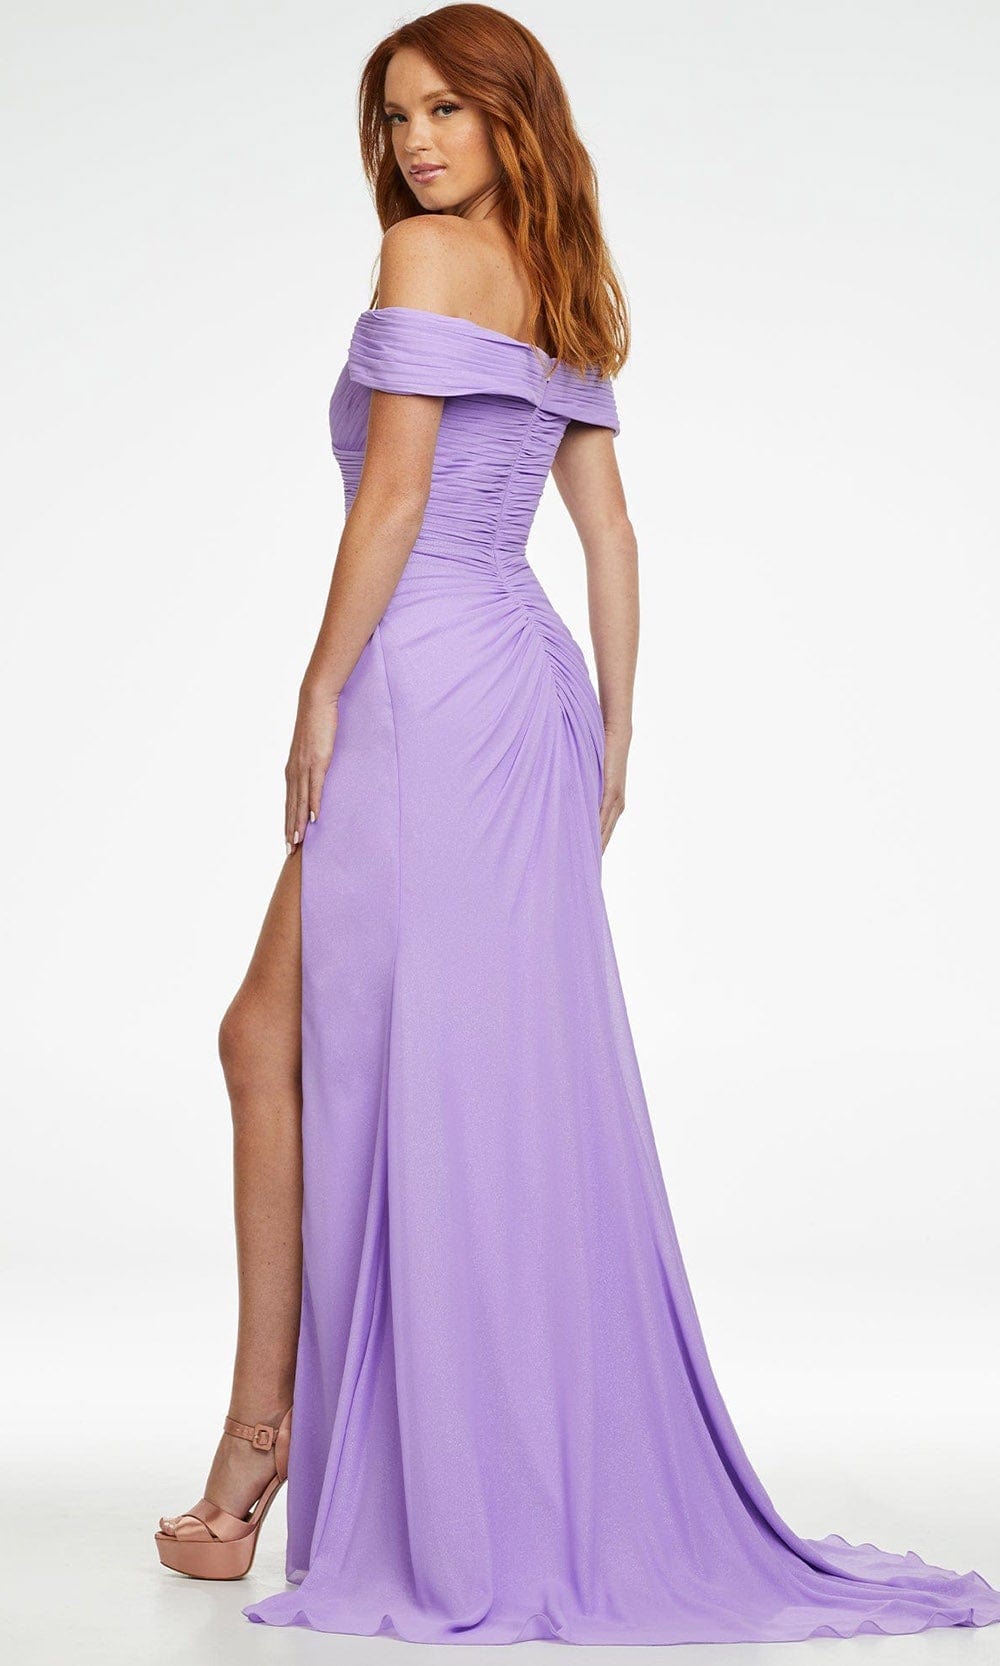 Ashley Lauren - 11136 Shirr-Ornate Off Shoulder Gown Prom Dresses